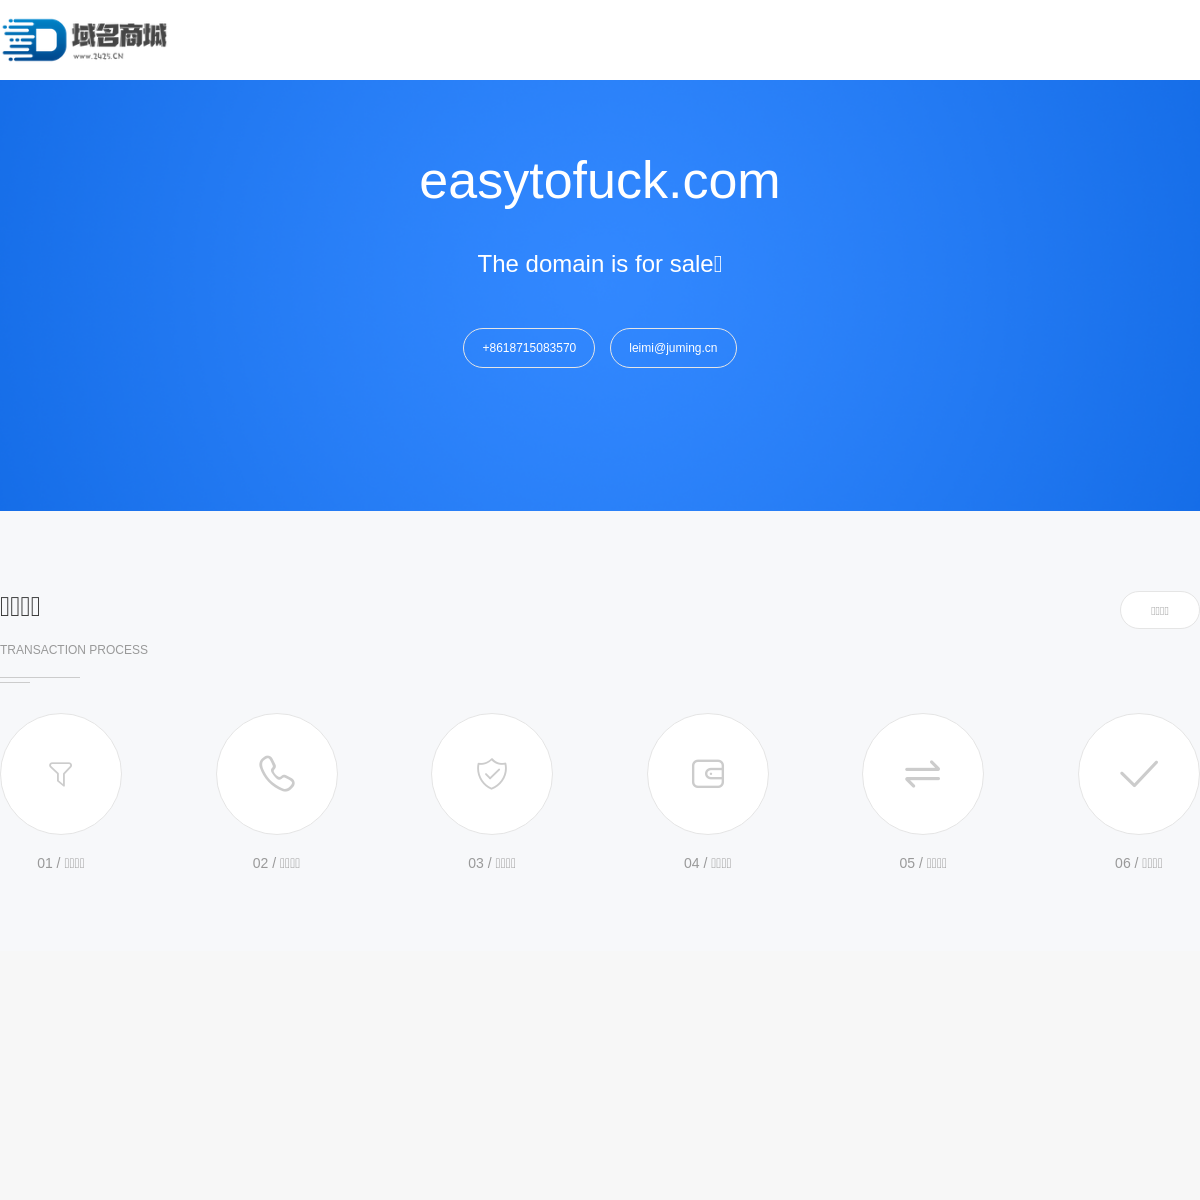 A complete backup of easytofuck.com